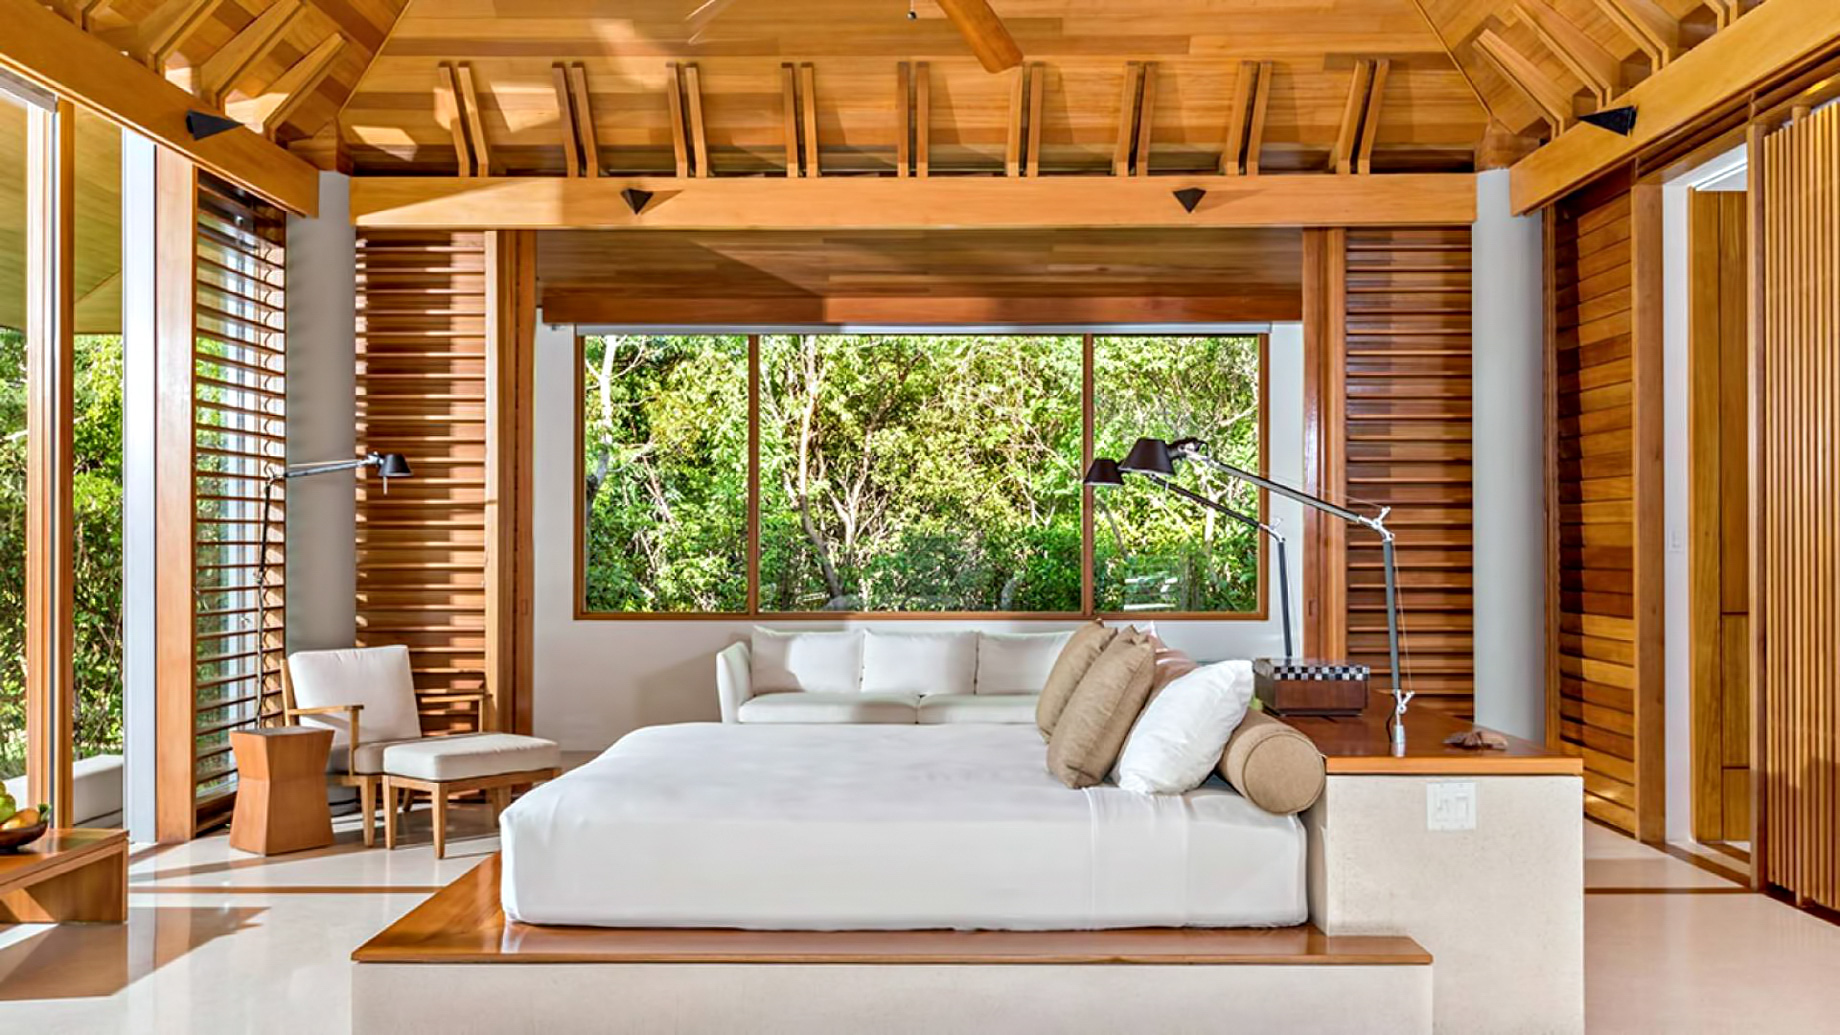 Amanyara Resort – Providenciales, Turks and Caicos Islands – 3 Bedroom Tranquility Villa Bedroom